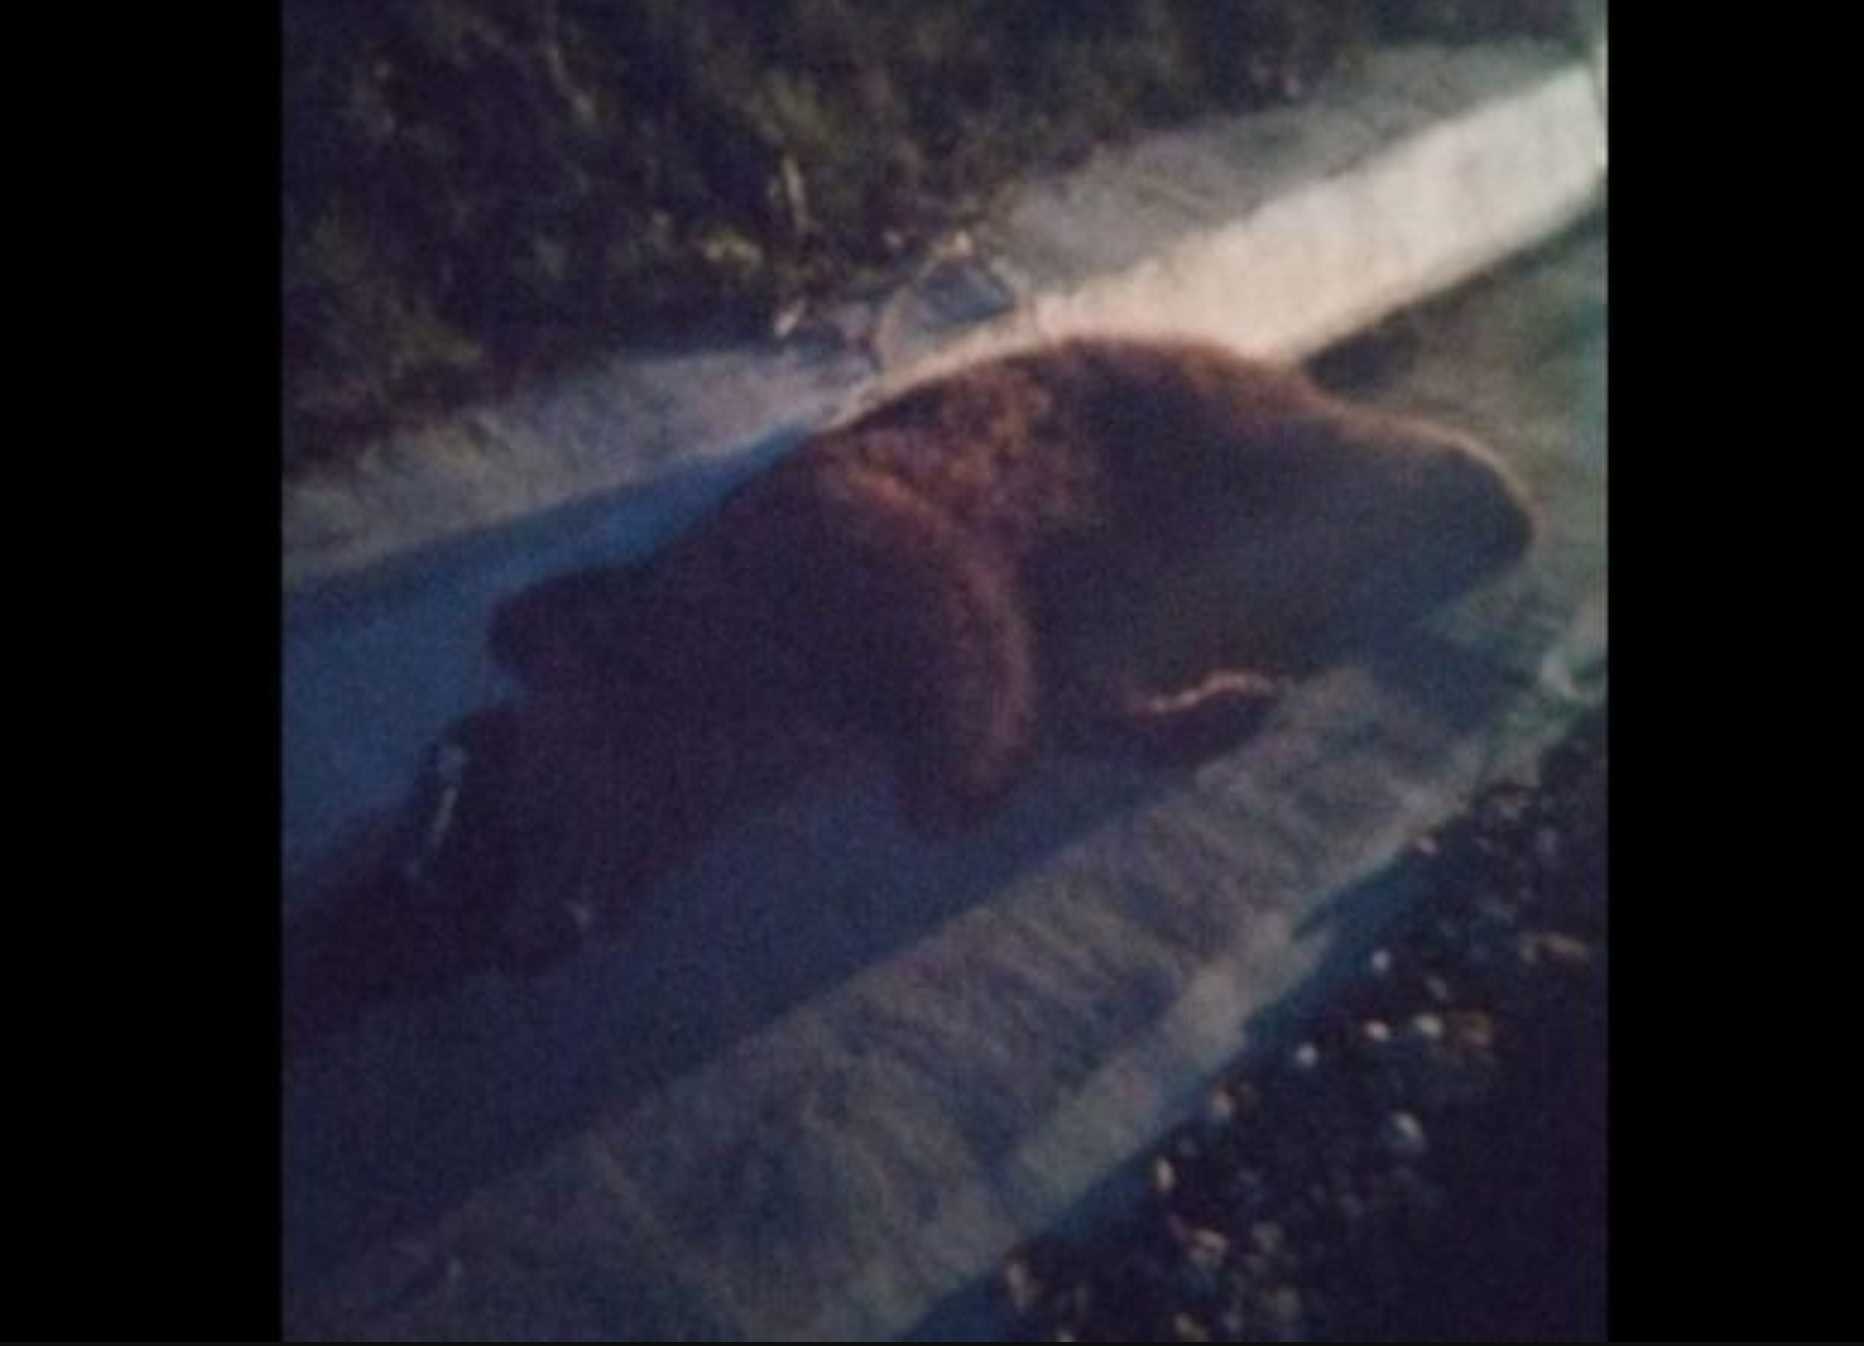 Urs lovit mortal de o mașină, în județul Sibiu